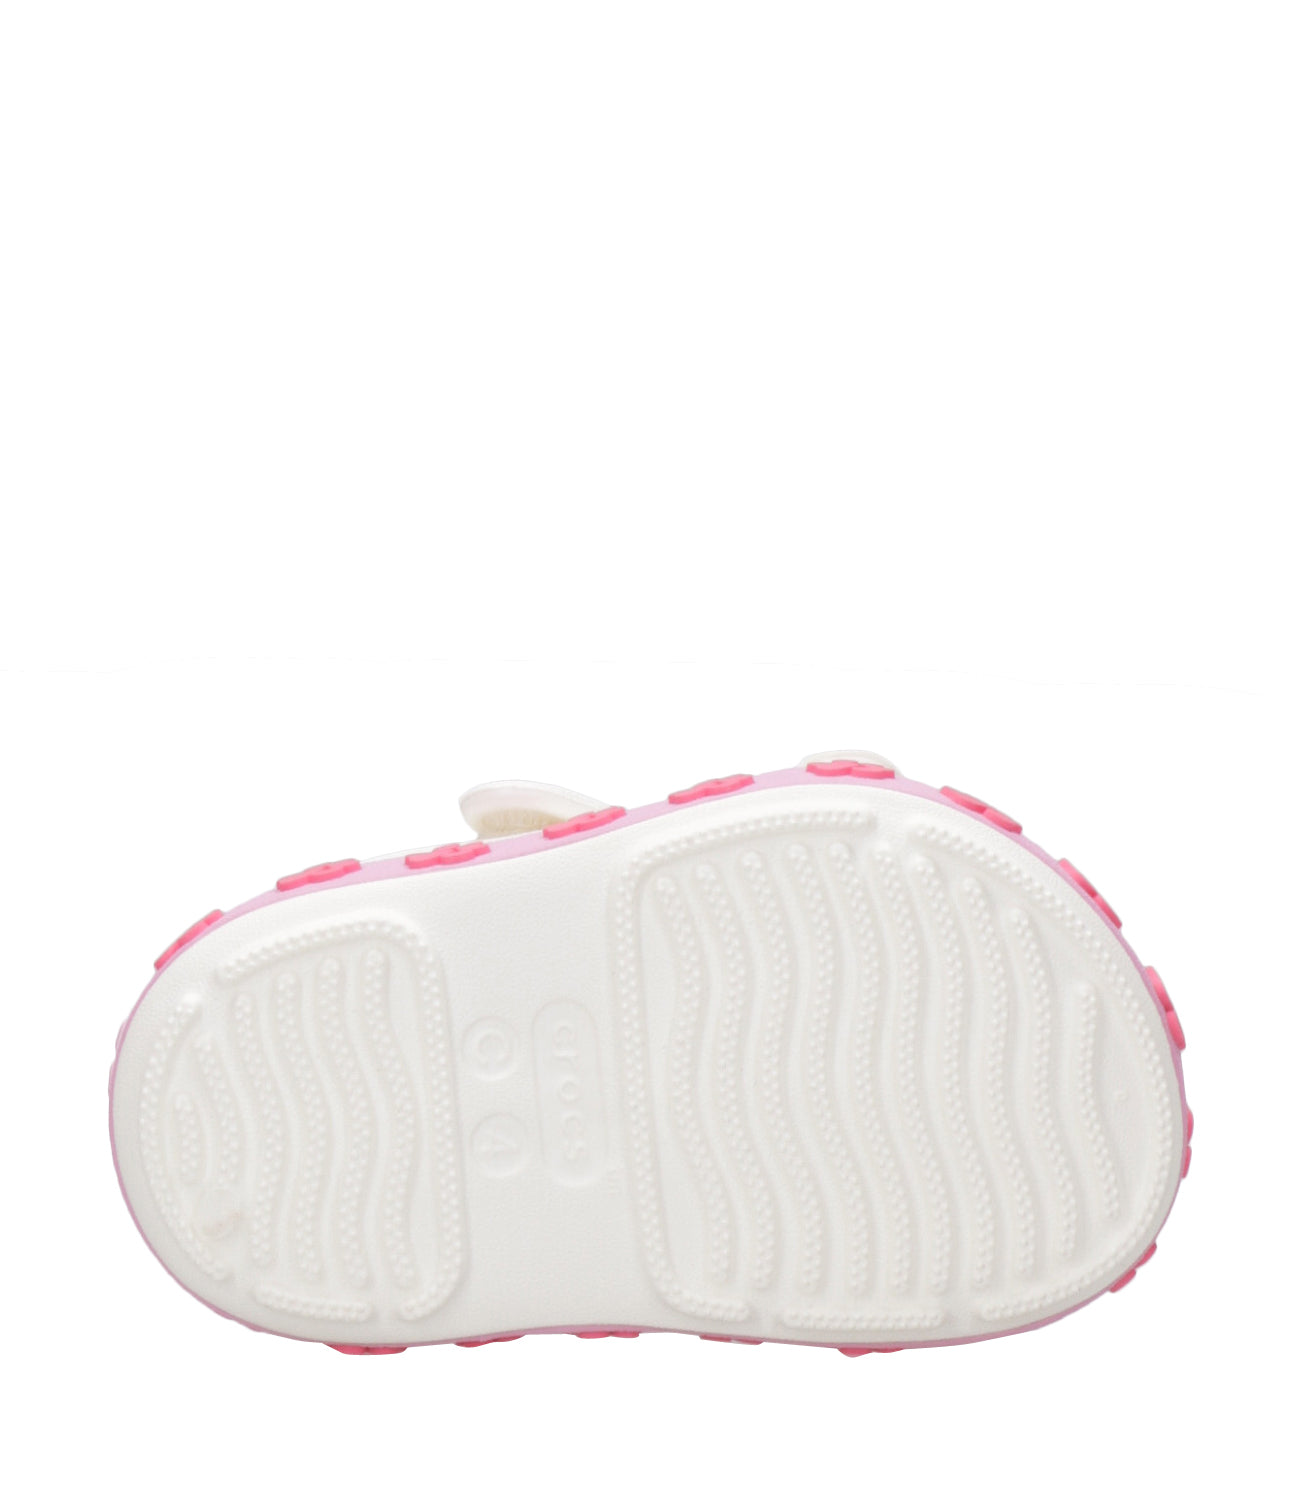 Crocs Kids | Sandalo Crocband Cruiser Bianco e Rosa